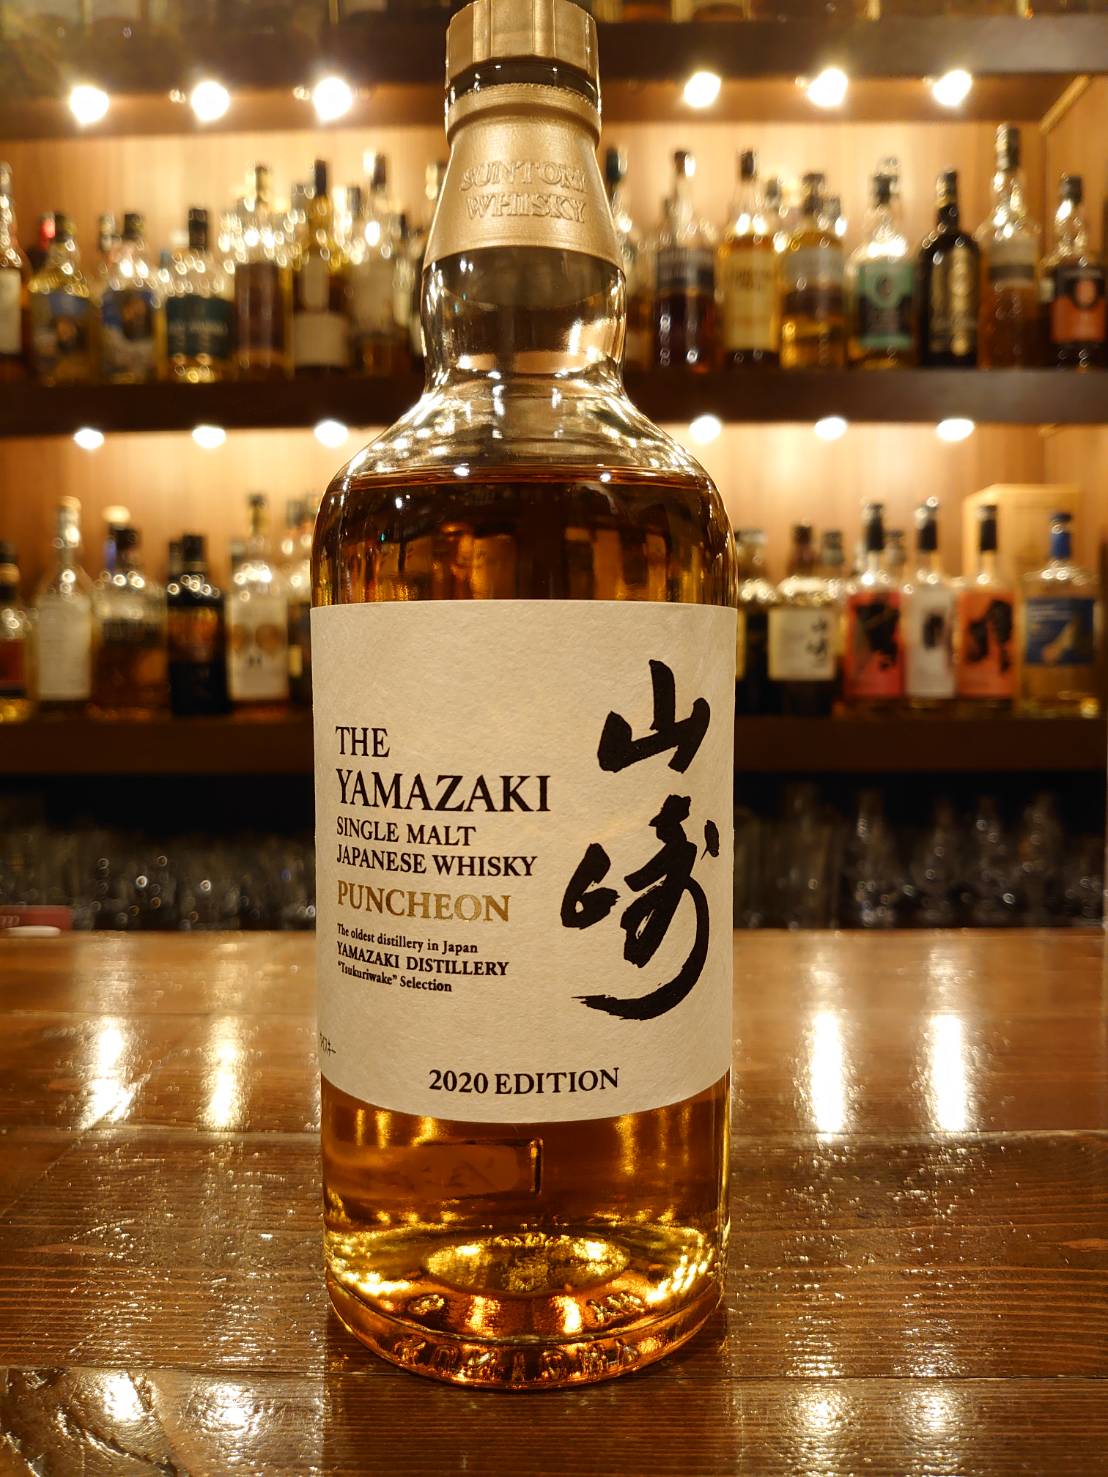 山崎 パンチョン 2020エディション— Rum＆Whisky リトルハピネス